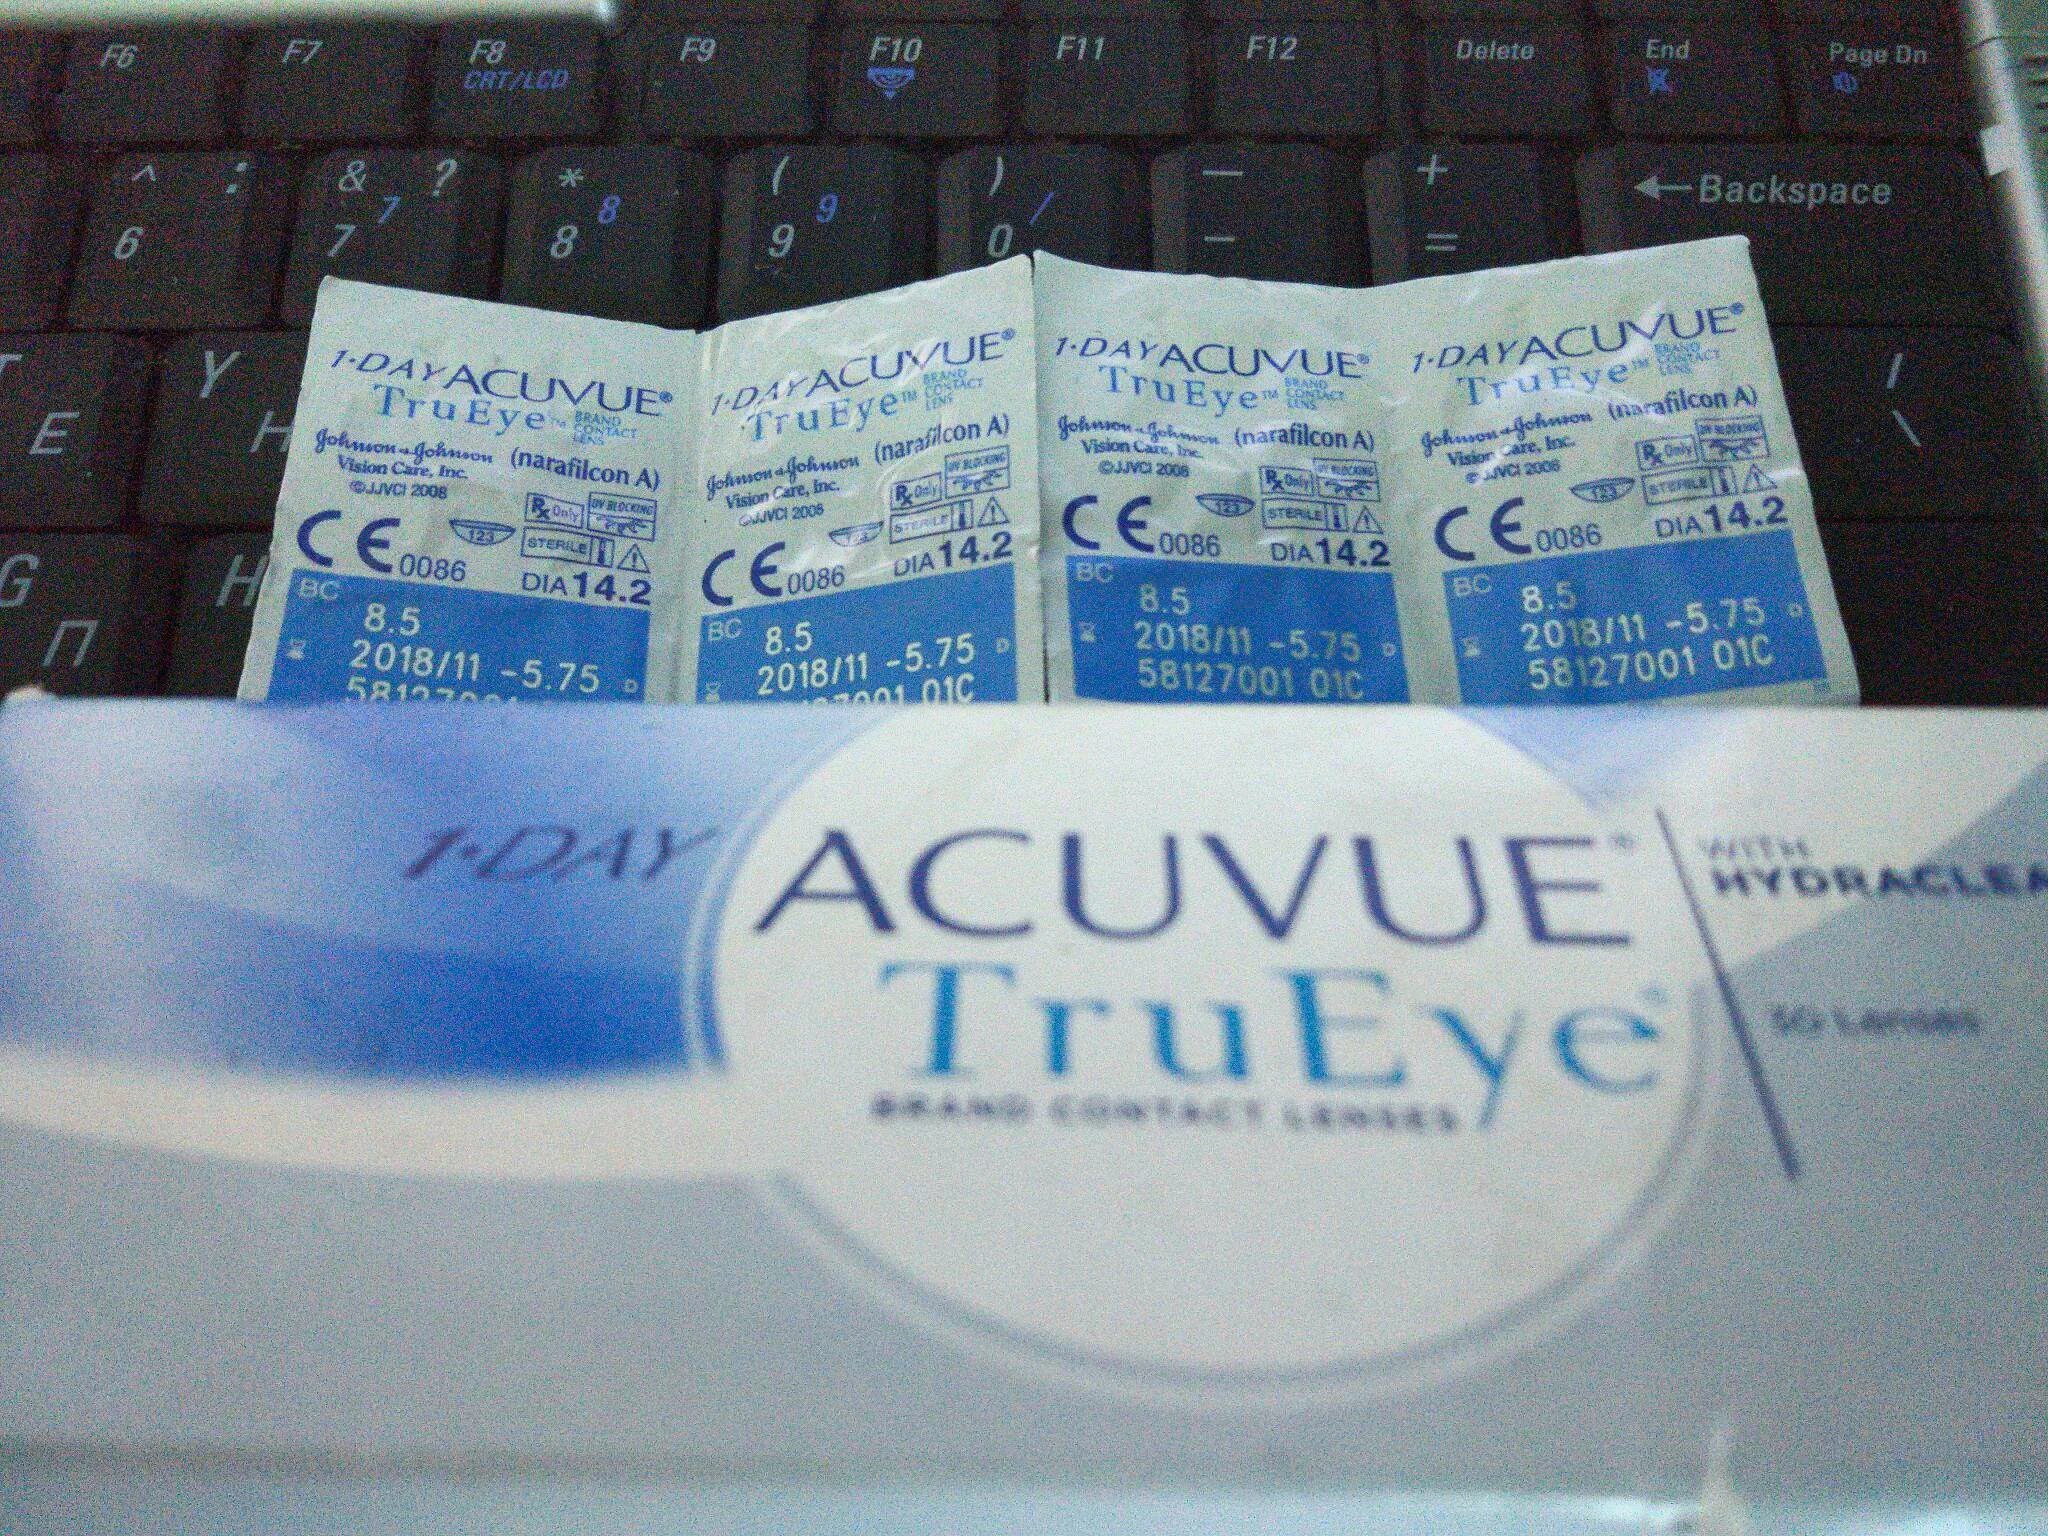 1-Day Acuvue TRUEYE (30 линз). Acuvue TRUEYE (30 линз). Линзы Acuvue true Eye 1 Day 30 шт. 1 Day Acuvue TRUEYE контактные линзы Acuvue TRUEYE 1.